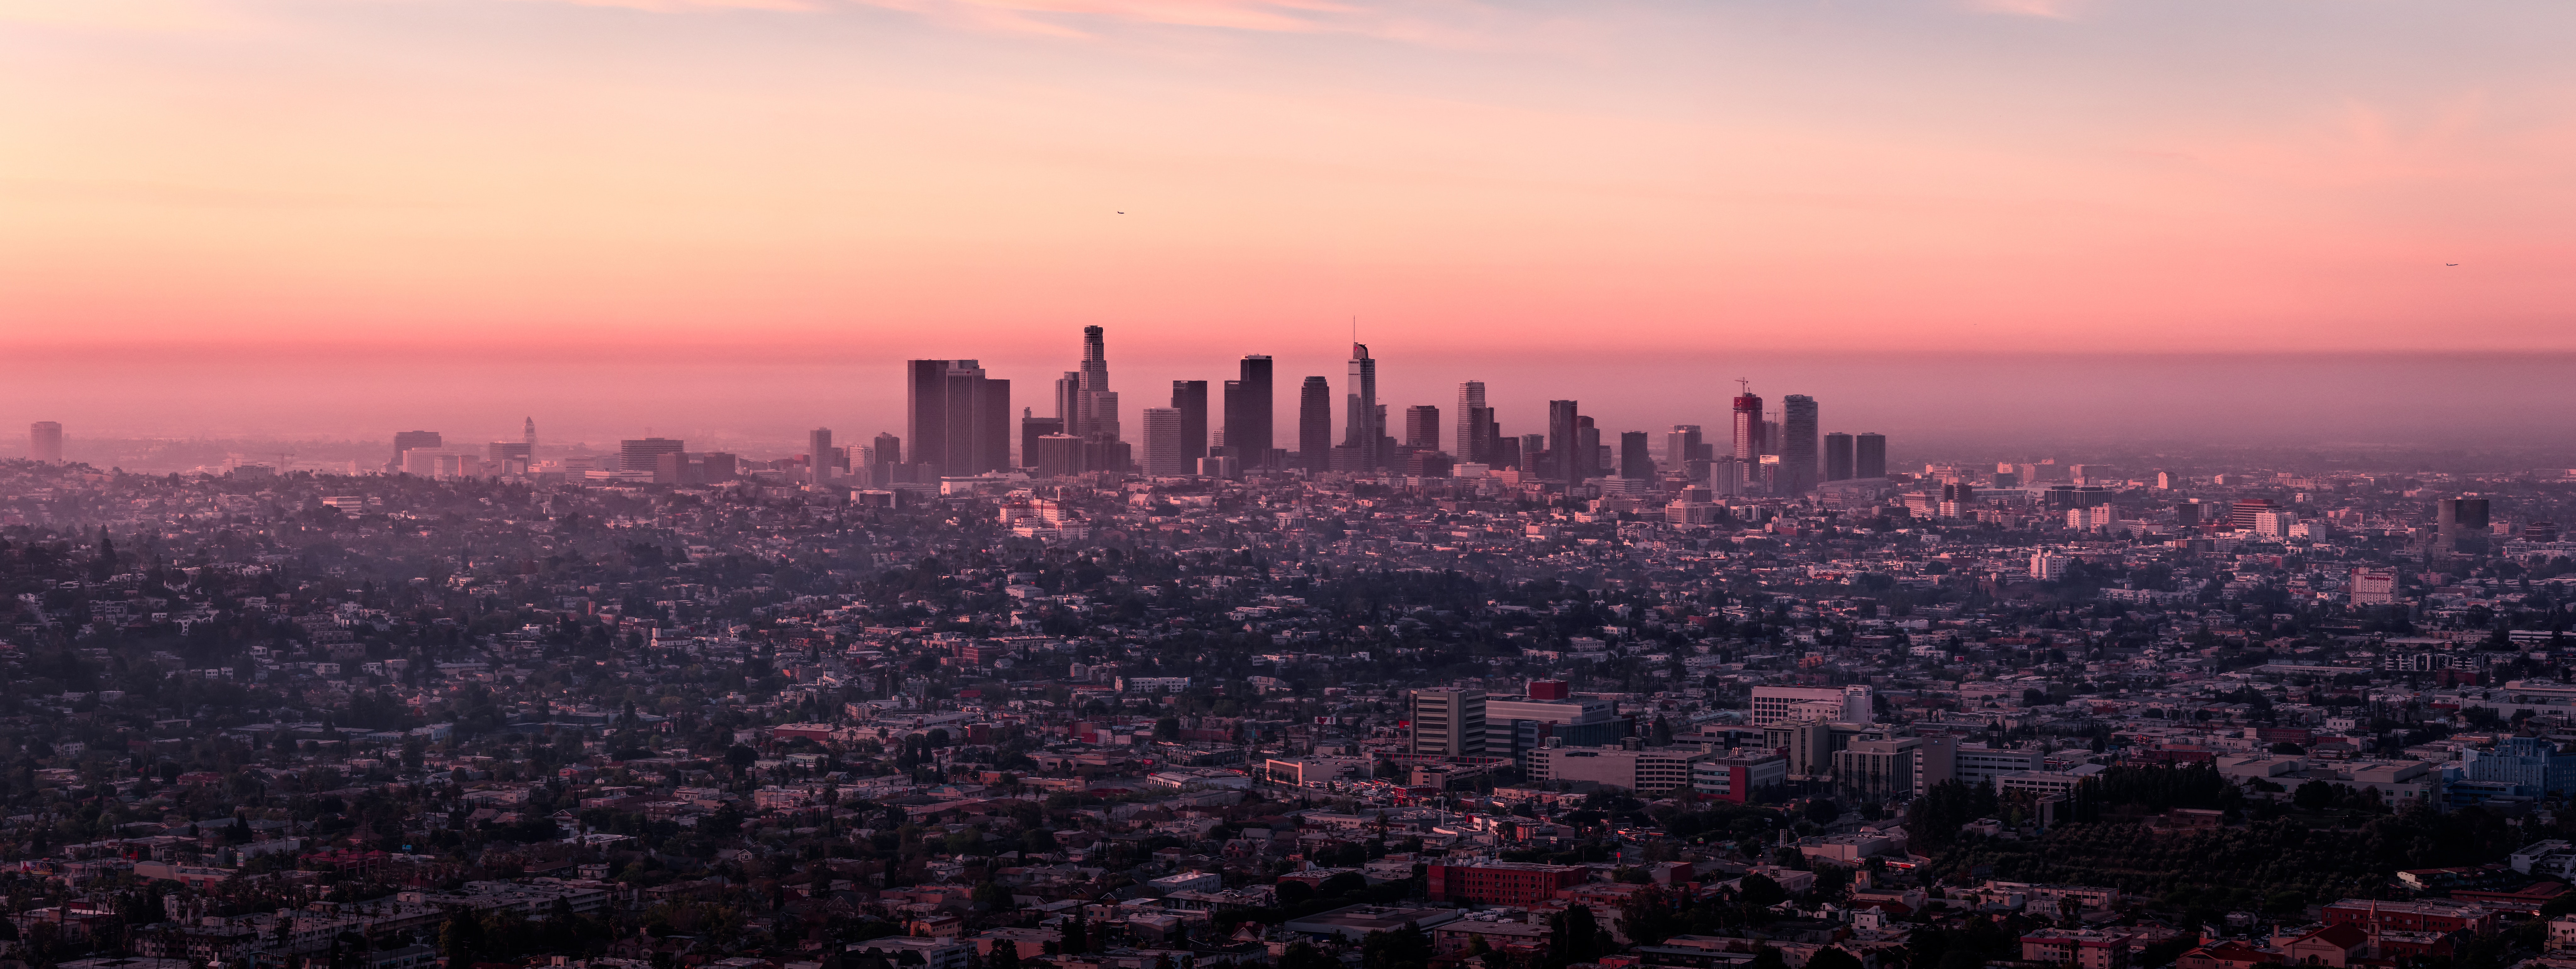 Los Angeles landscape during dusk